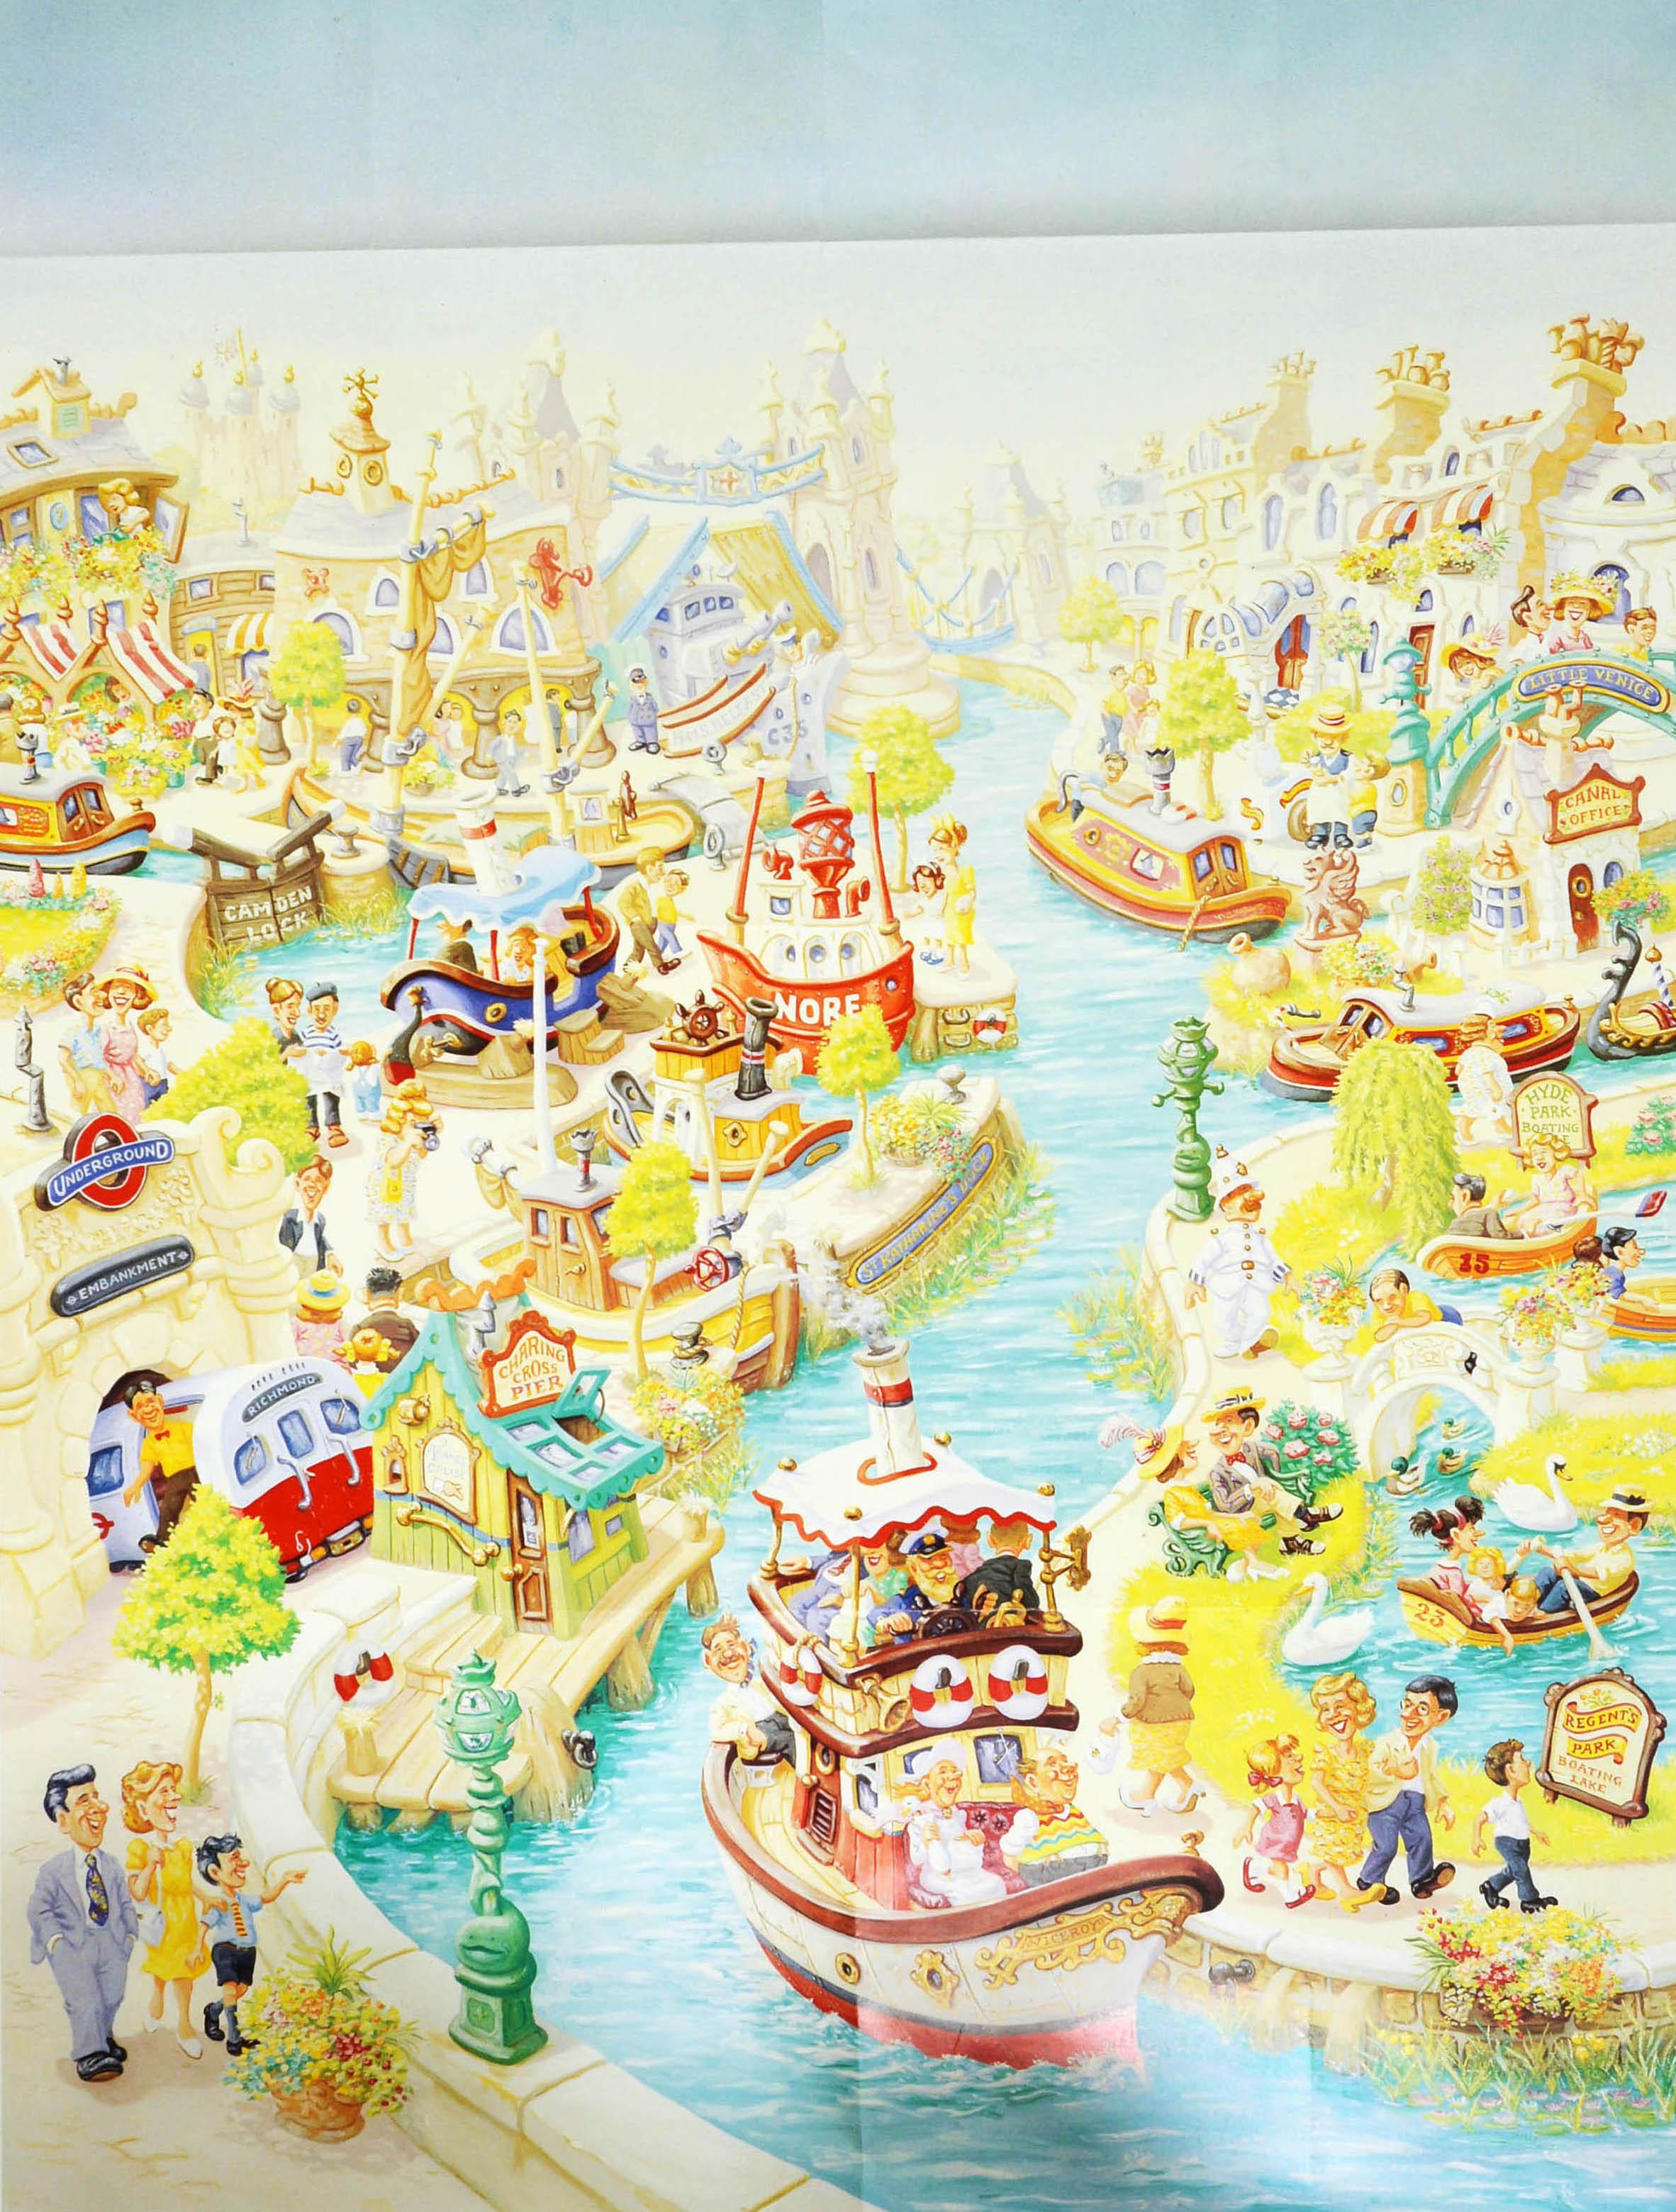 Affiche originale vintage du métro de Londres - catch the boat by tube - avec des illustrations colorées du peintre britannique Charles Shiels (1947-2012) représentant des scènes le long de la Tamise, notamment des bateaux sur l'eau et une rame de